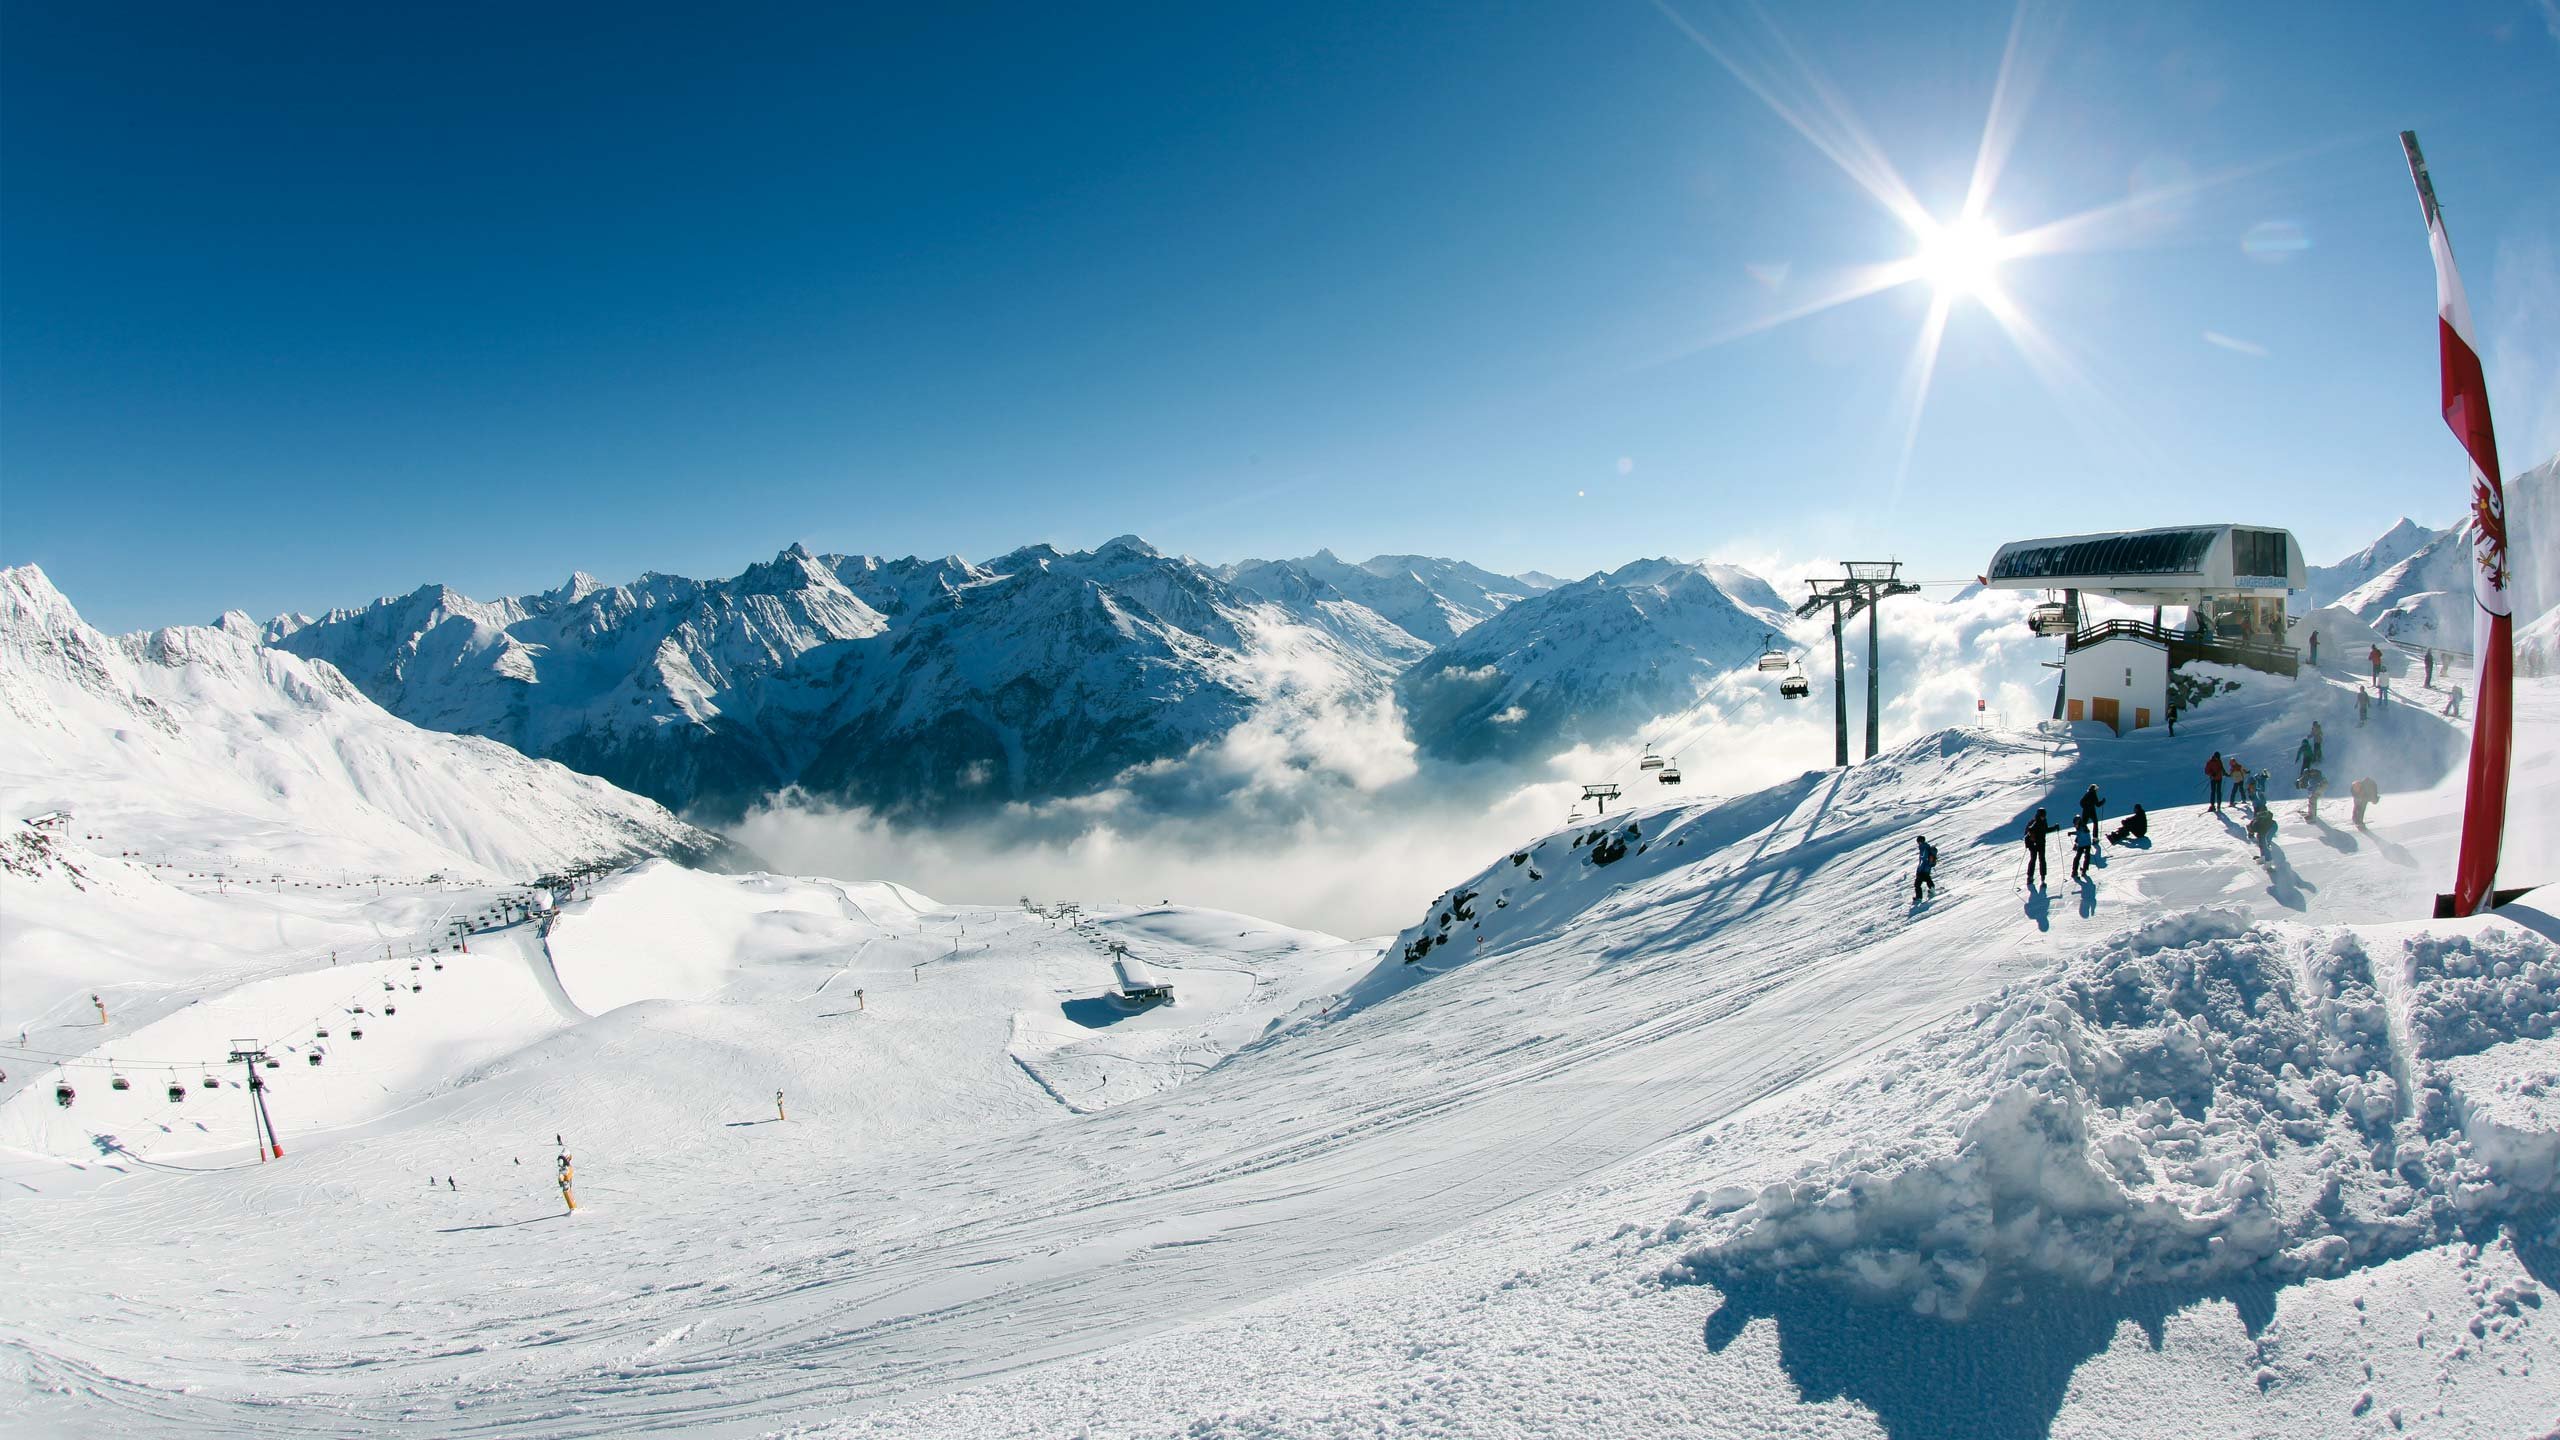 Первый горнолыжный курорт. Зёльден горнолыжный курорт. Австрия горнолыжный курорт Зельден. Швейцария Альпы горнолыжка. Отцталь Австрия горнолыжный курорт.